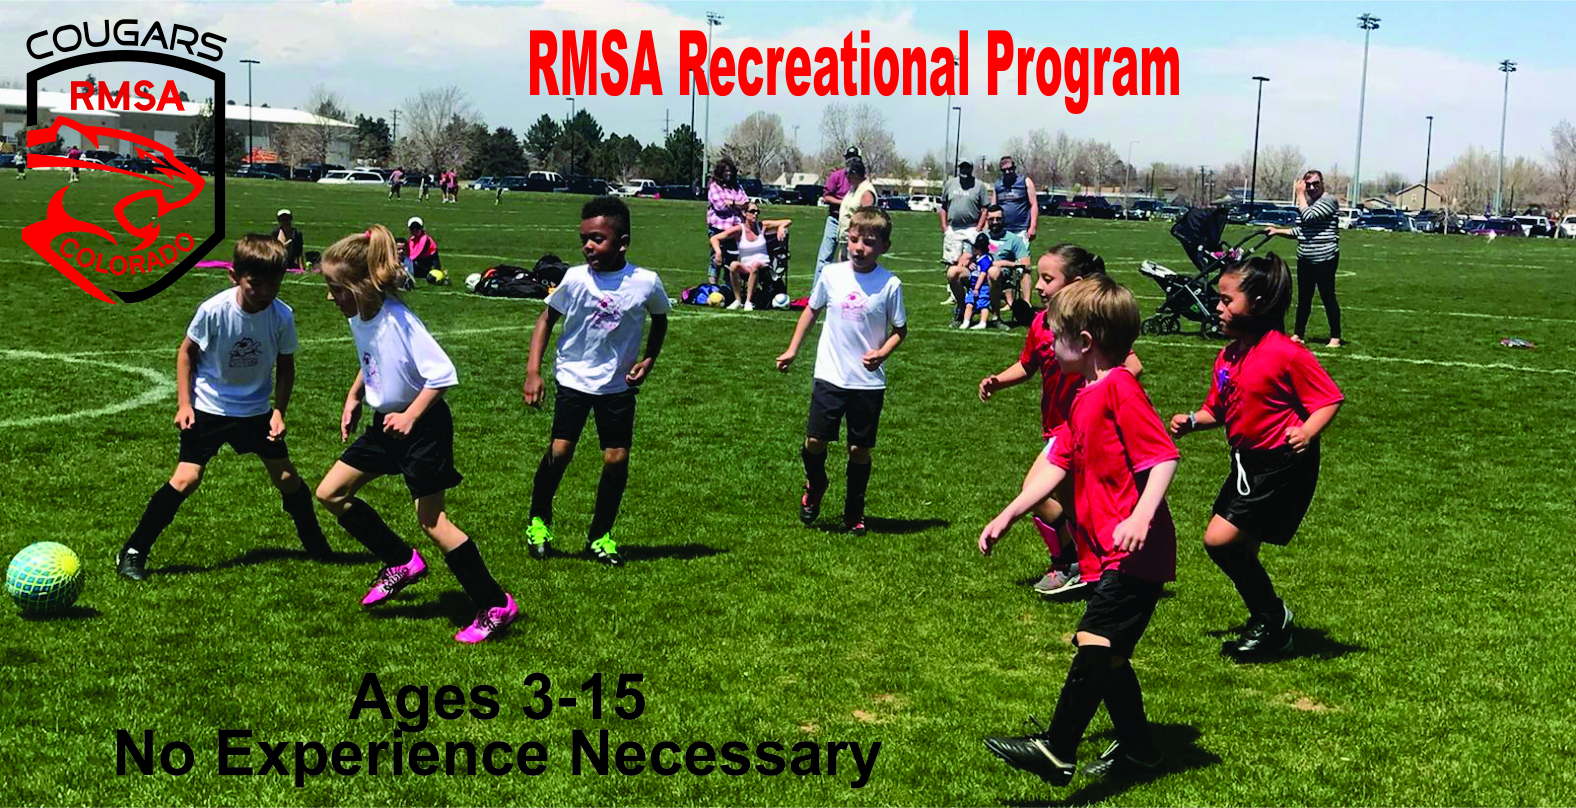 Register Now for the RMSA Recreational Program!